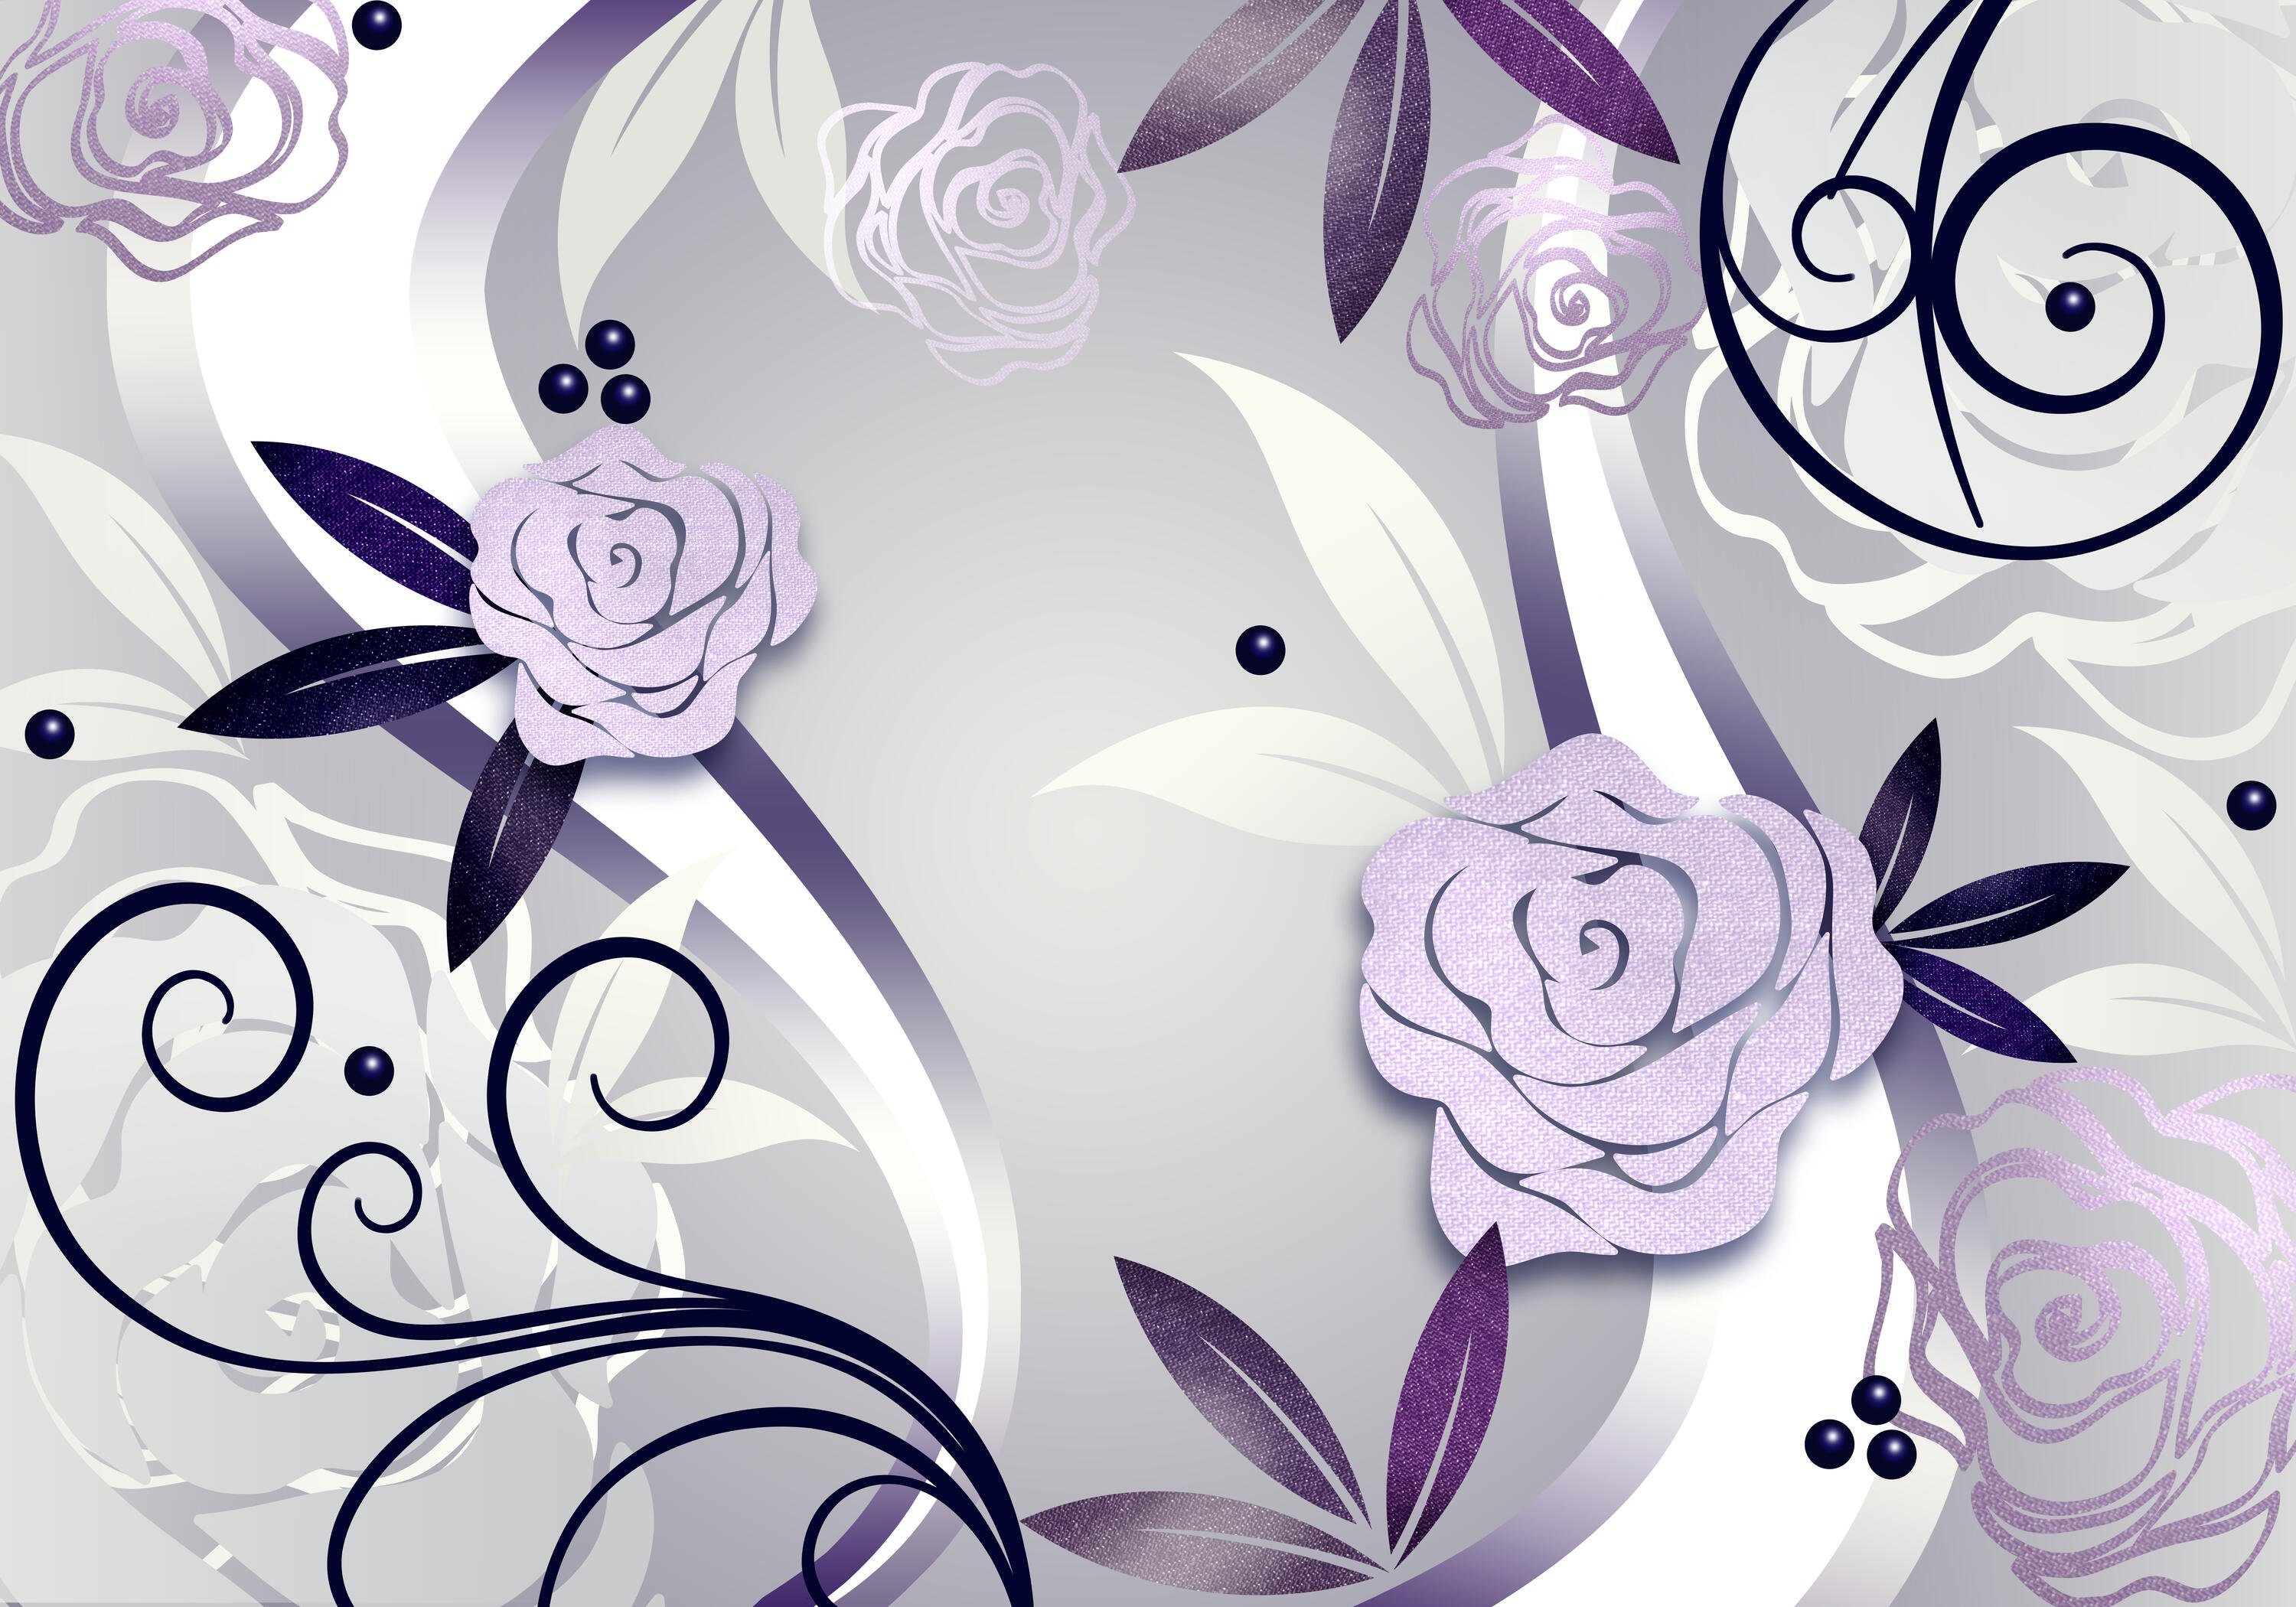 wandmotiv24 Wandtapete, Ornamente, violette glatt, Motivtapete, Rosenblüten matt, Vliestapete Fototapete